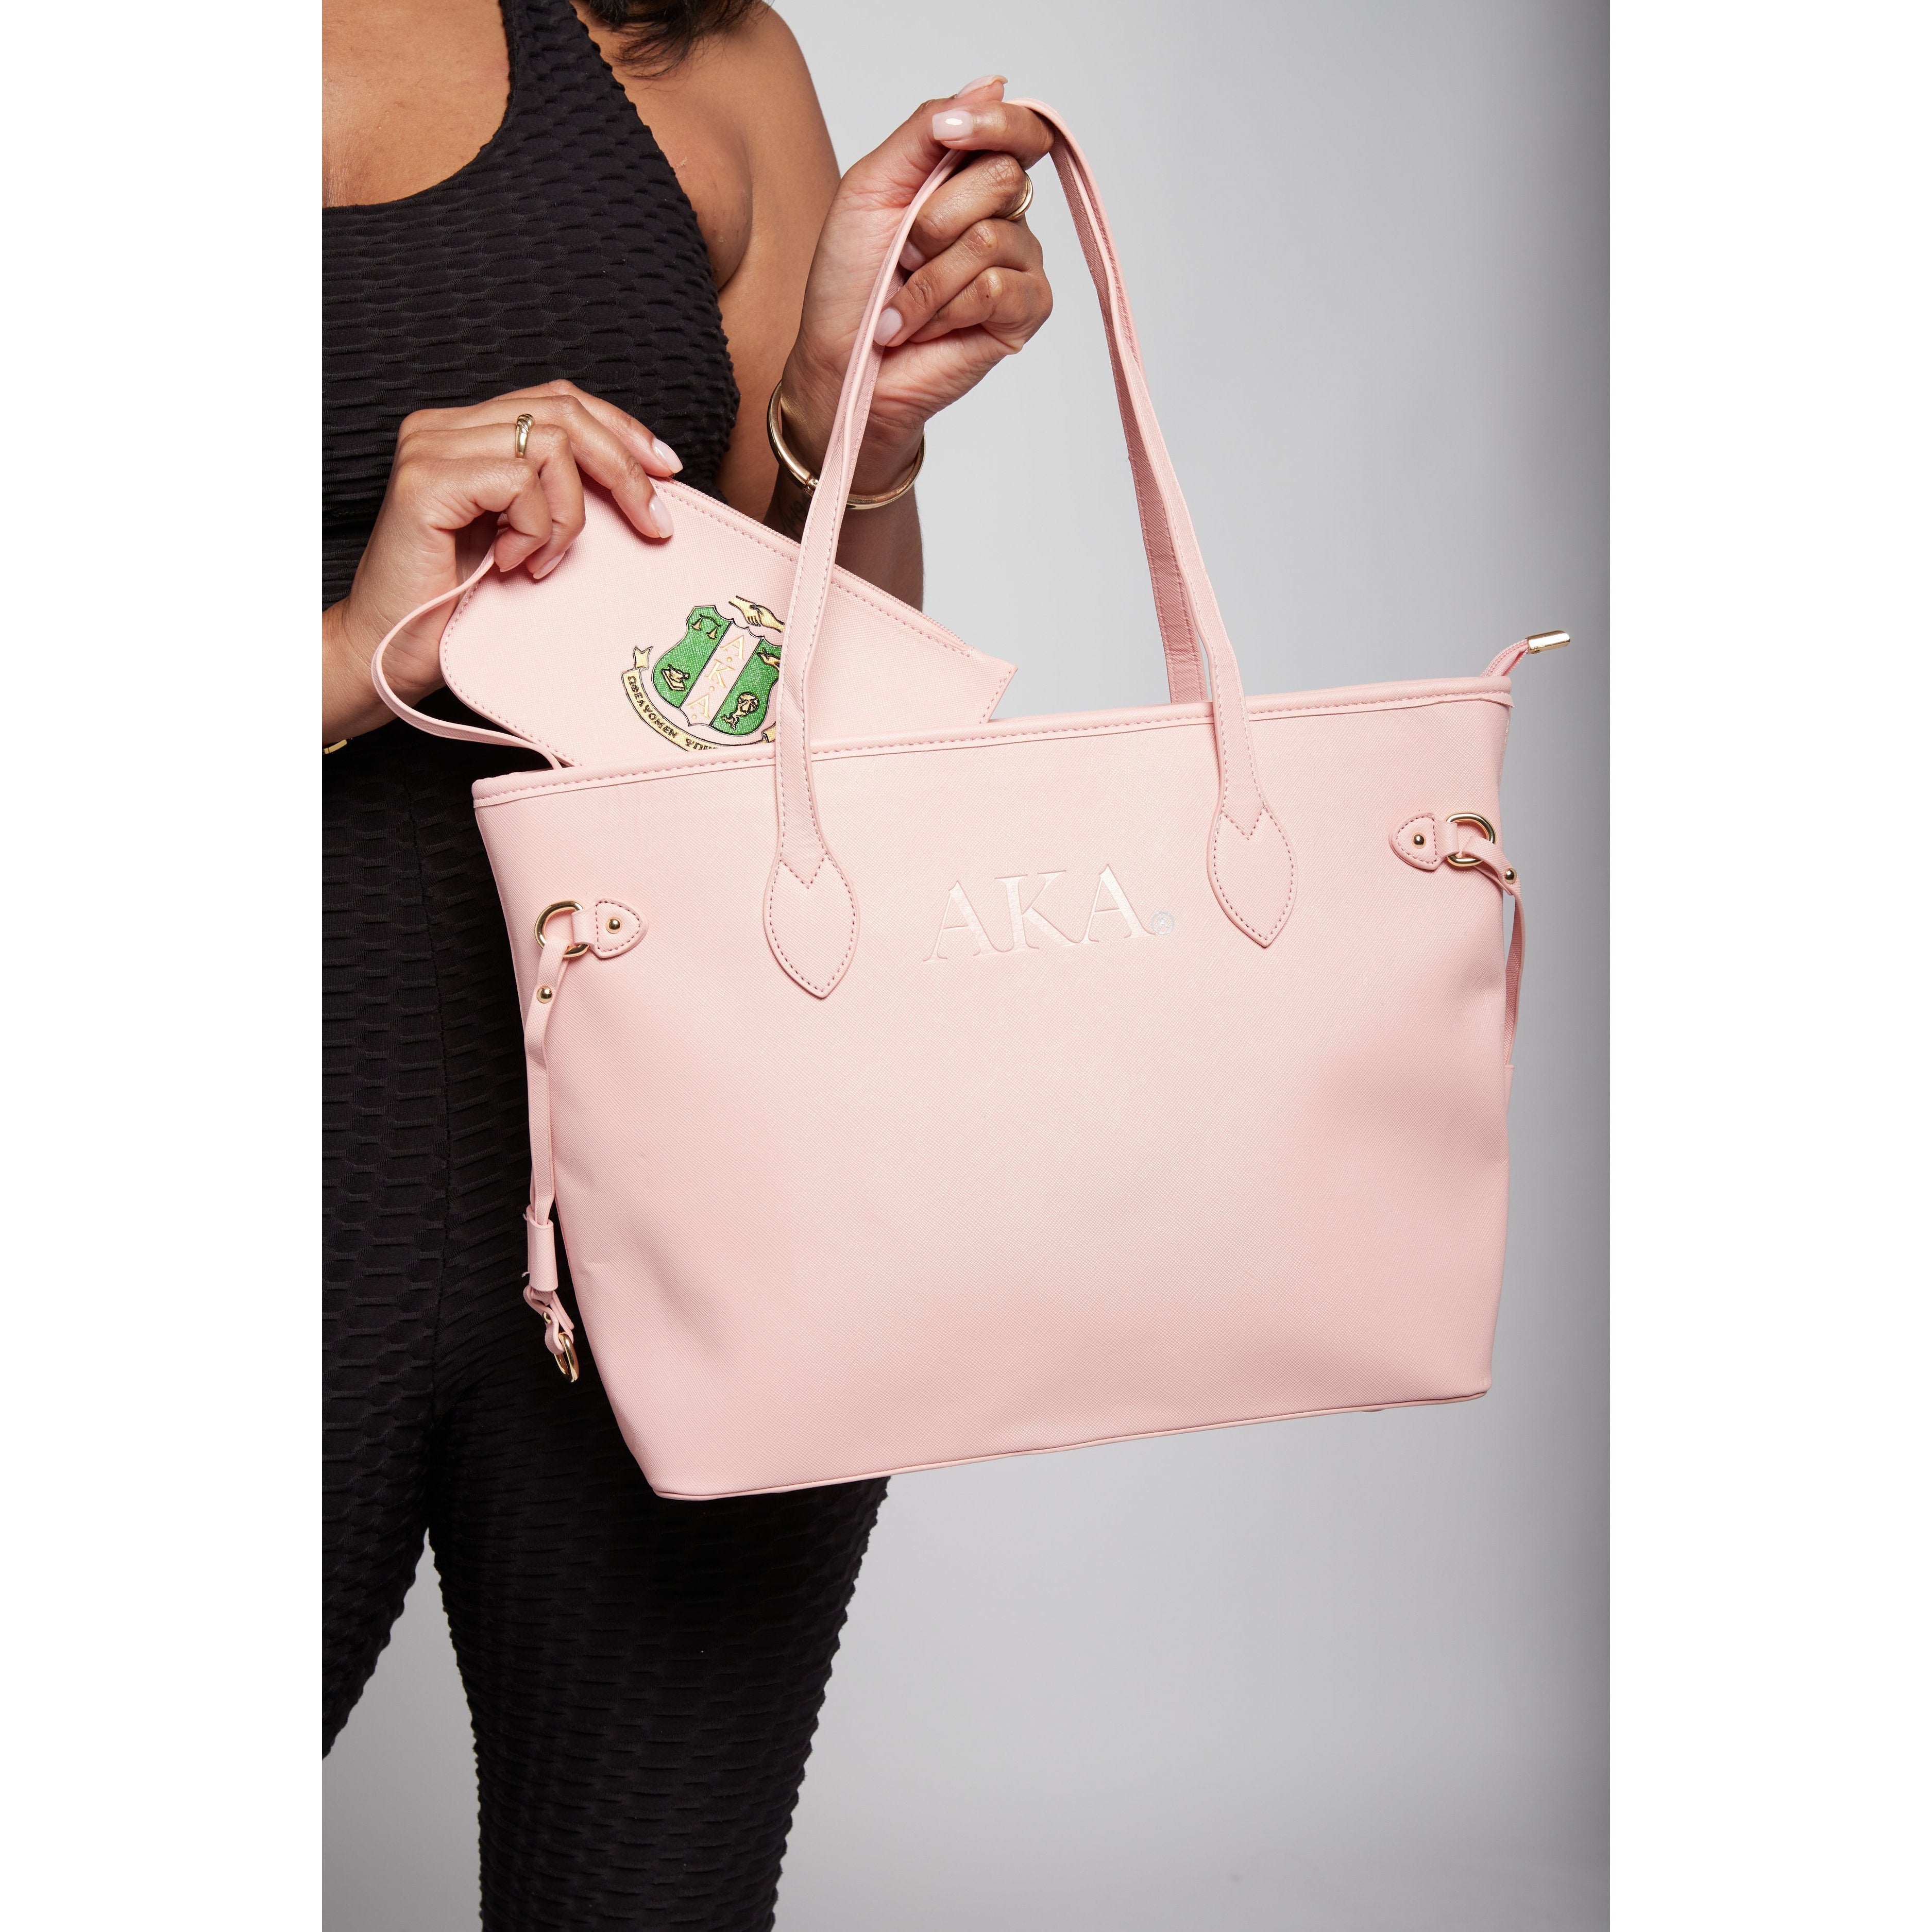 AKA® Stripe Shoulder bag – CAUSE For Elegance